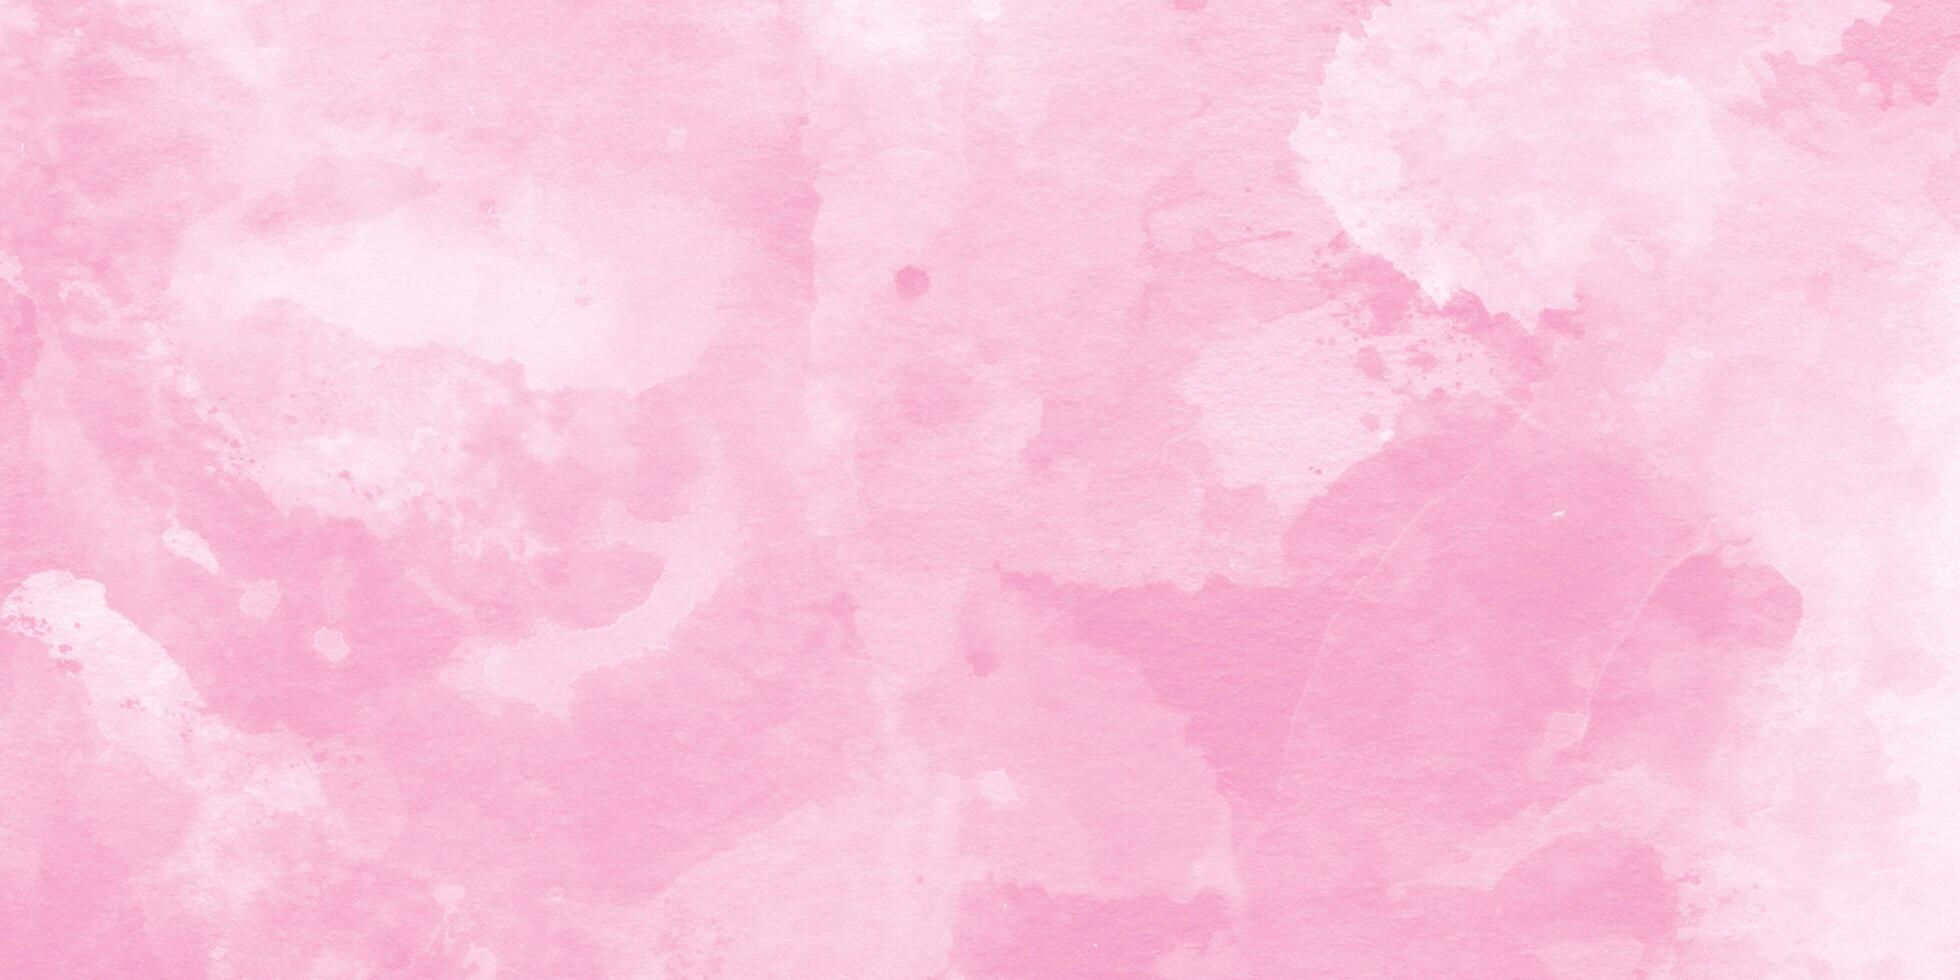 abstrakt borsta målad himmel fantasi pastell rosa vattenfärg bakgrund, dekorativ mjuk rosa papper textur, akryl skinande rosa strömmande bläck grunge textur, mjuk rosa stänk abstrakt rosa bakgrund. foto